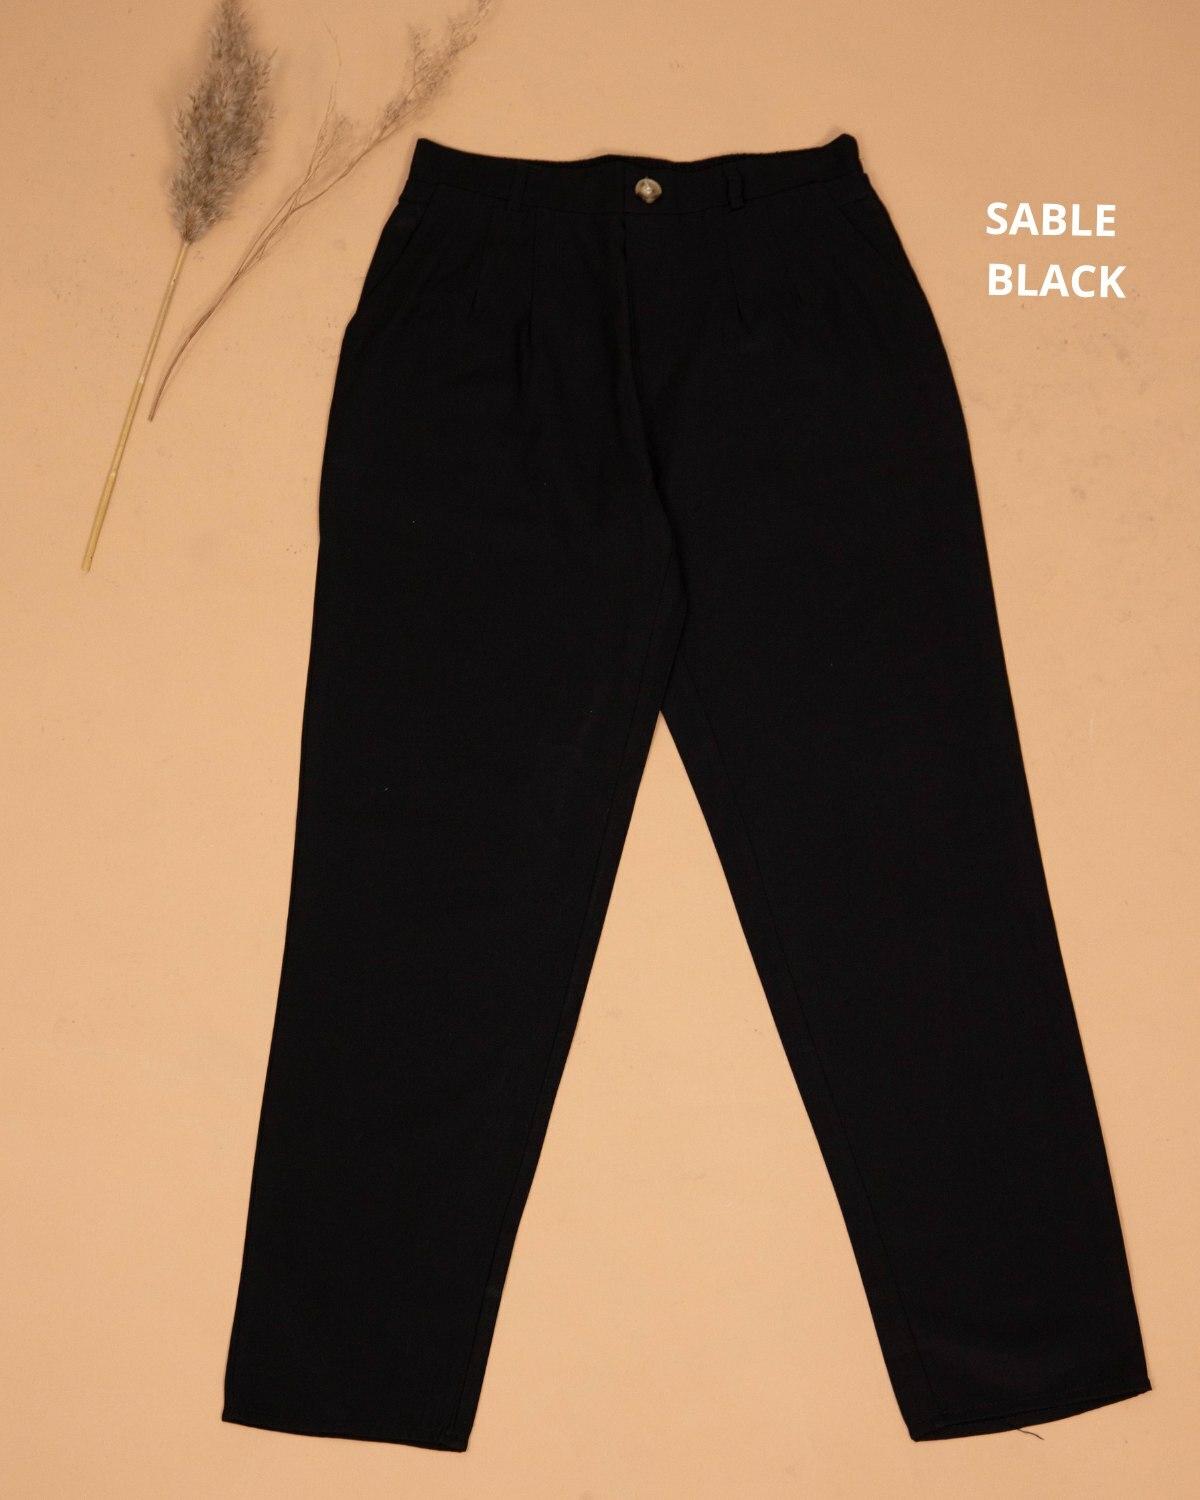 haura-wear-neeta-slim-straight-cotton-long-pants-seluar-muslimah-seluar-perempuan-palazzo-pants-sluar (11).jpg